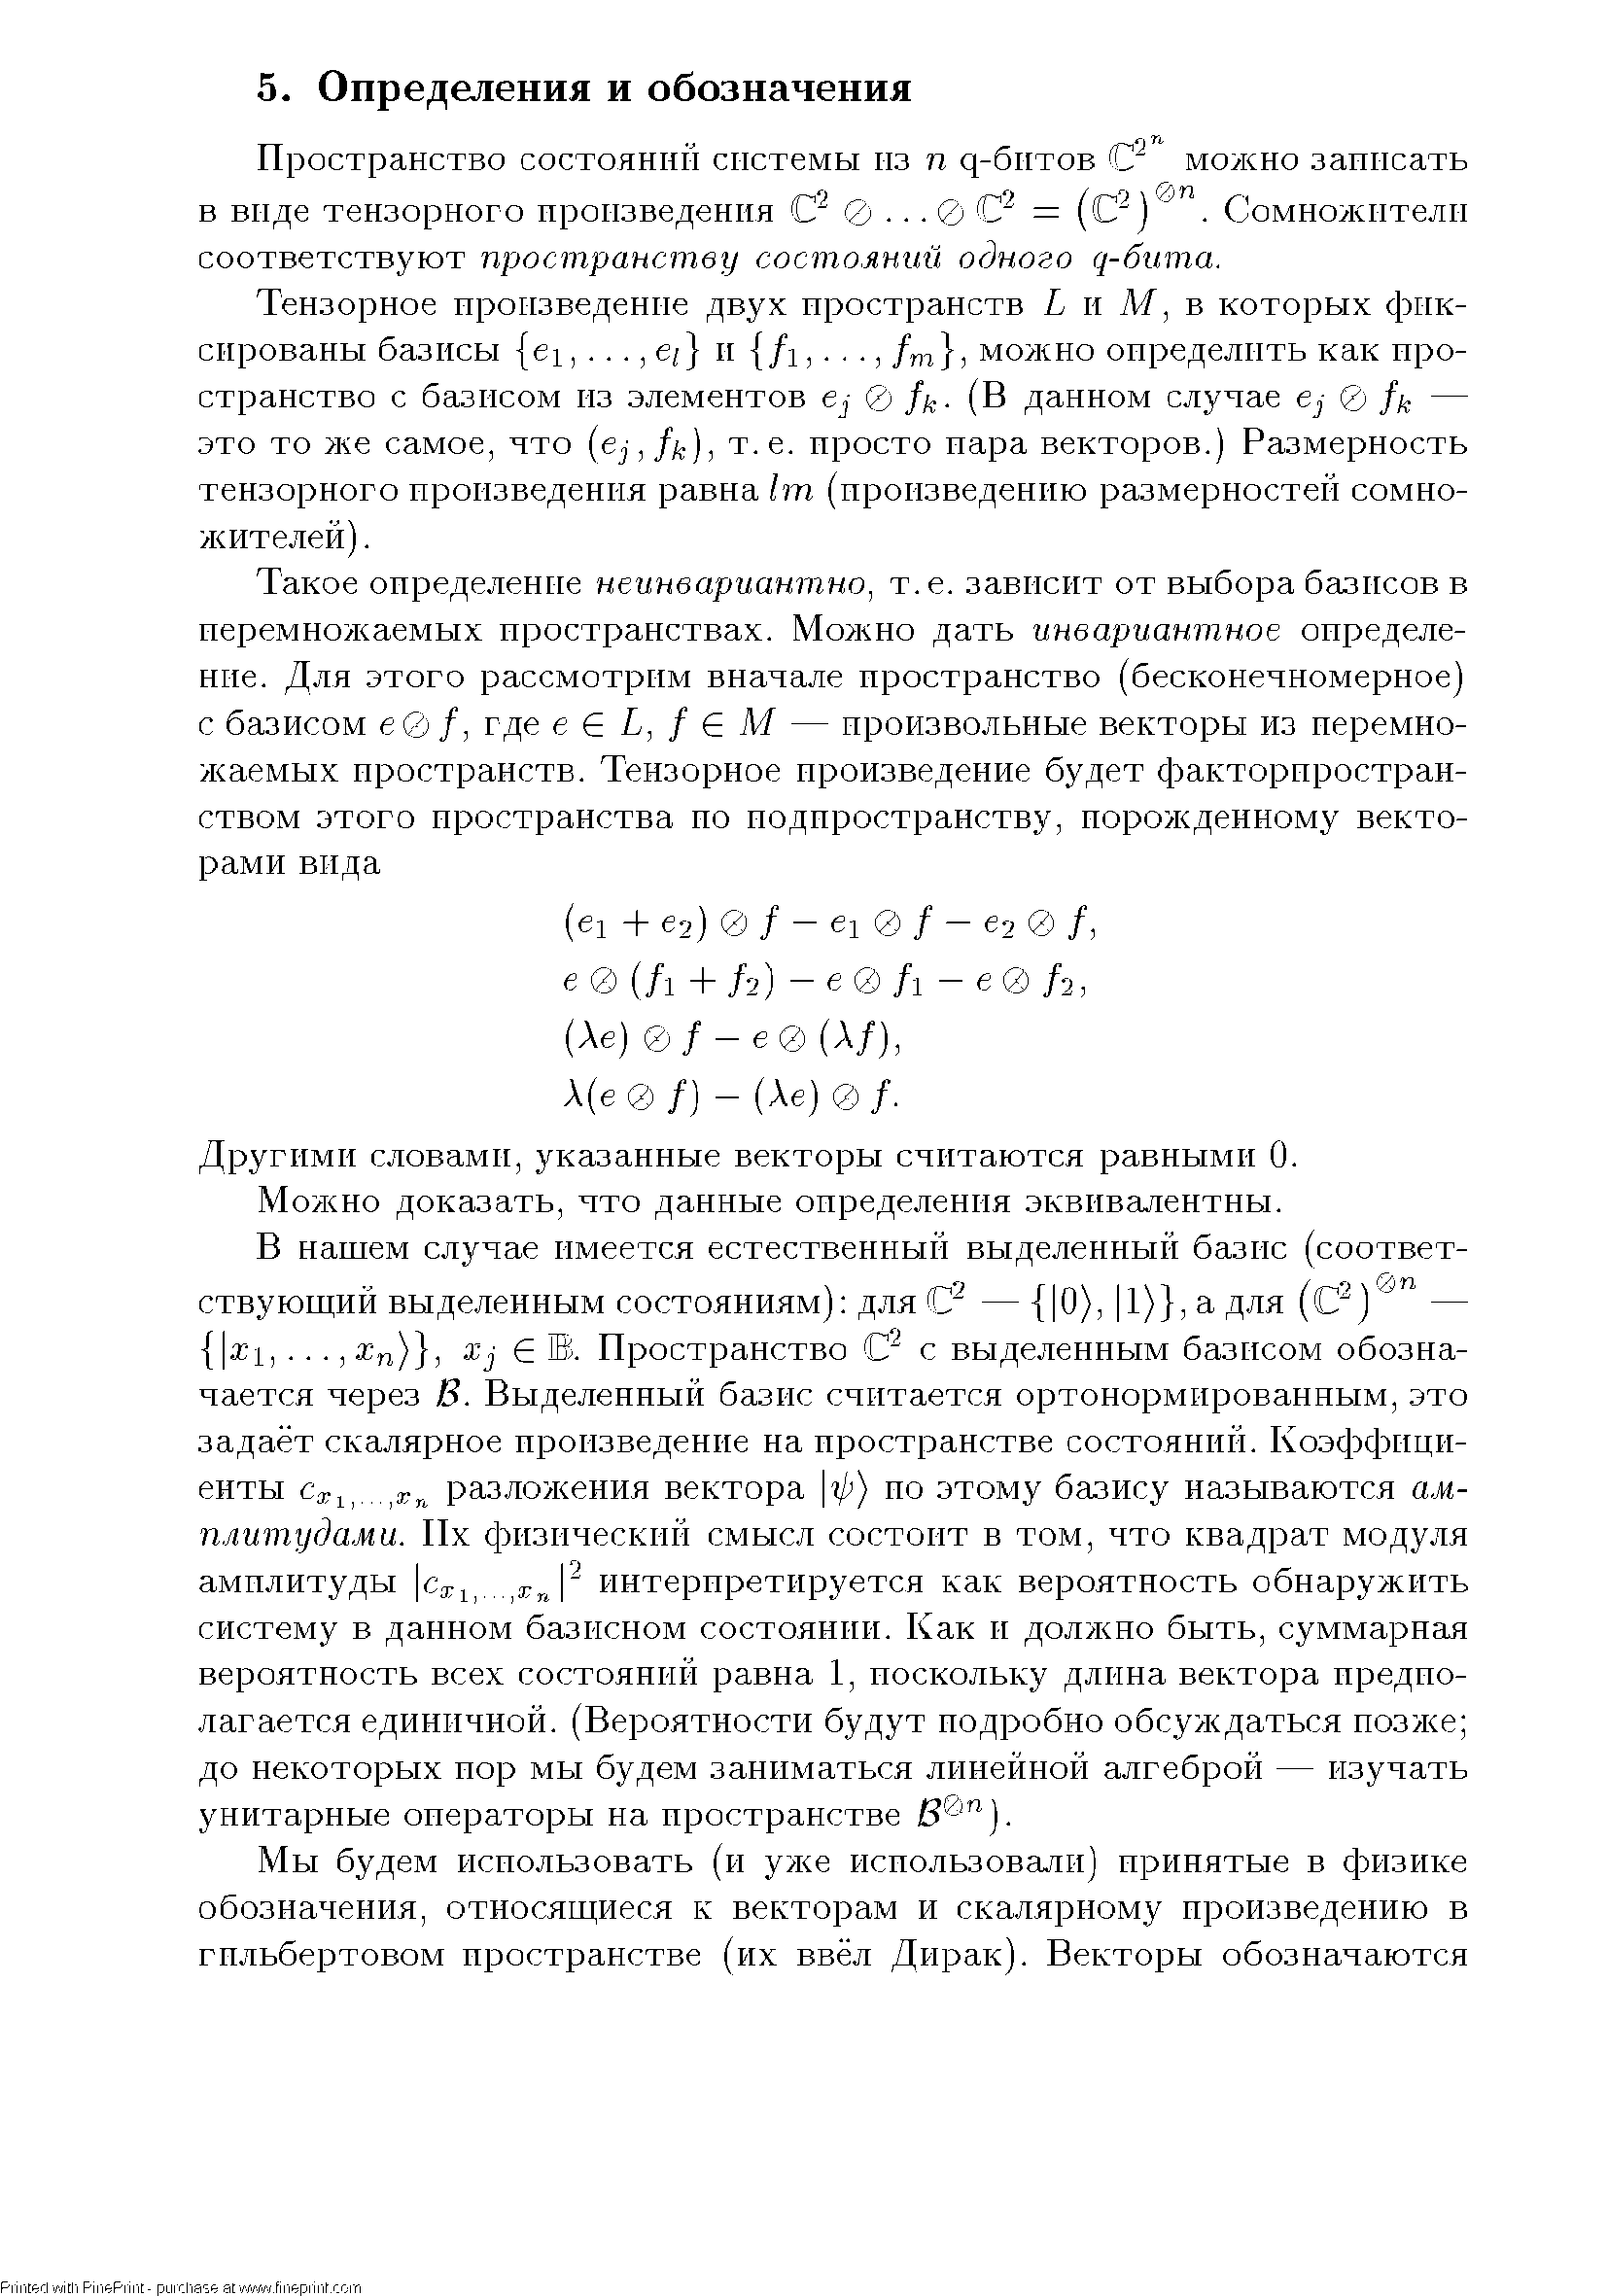 Пространство состояний системы из п q-бнтoв можно записать в виде тензорного произведения С 0. .. 0 С = (С ) . Сомножители соответствуют пространству состояний одного ( -бита.